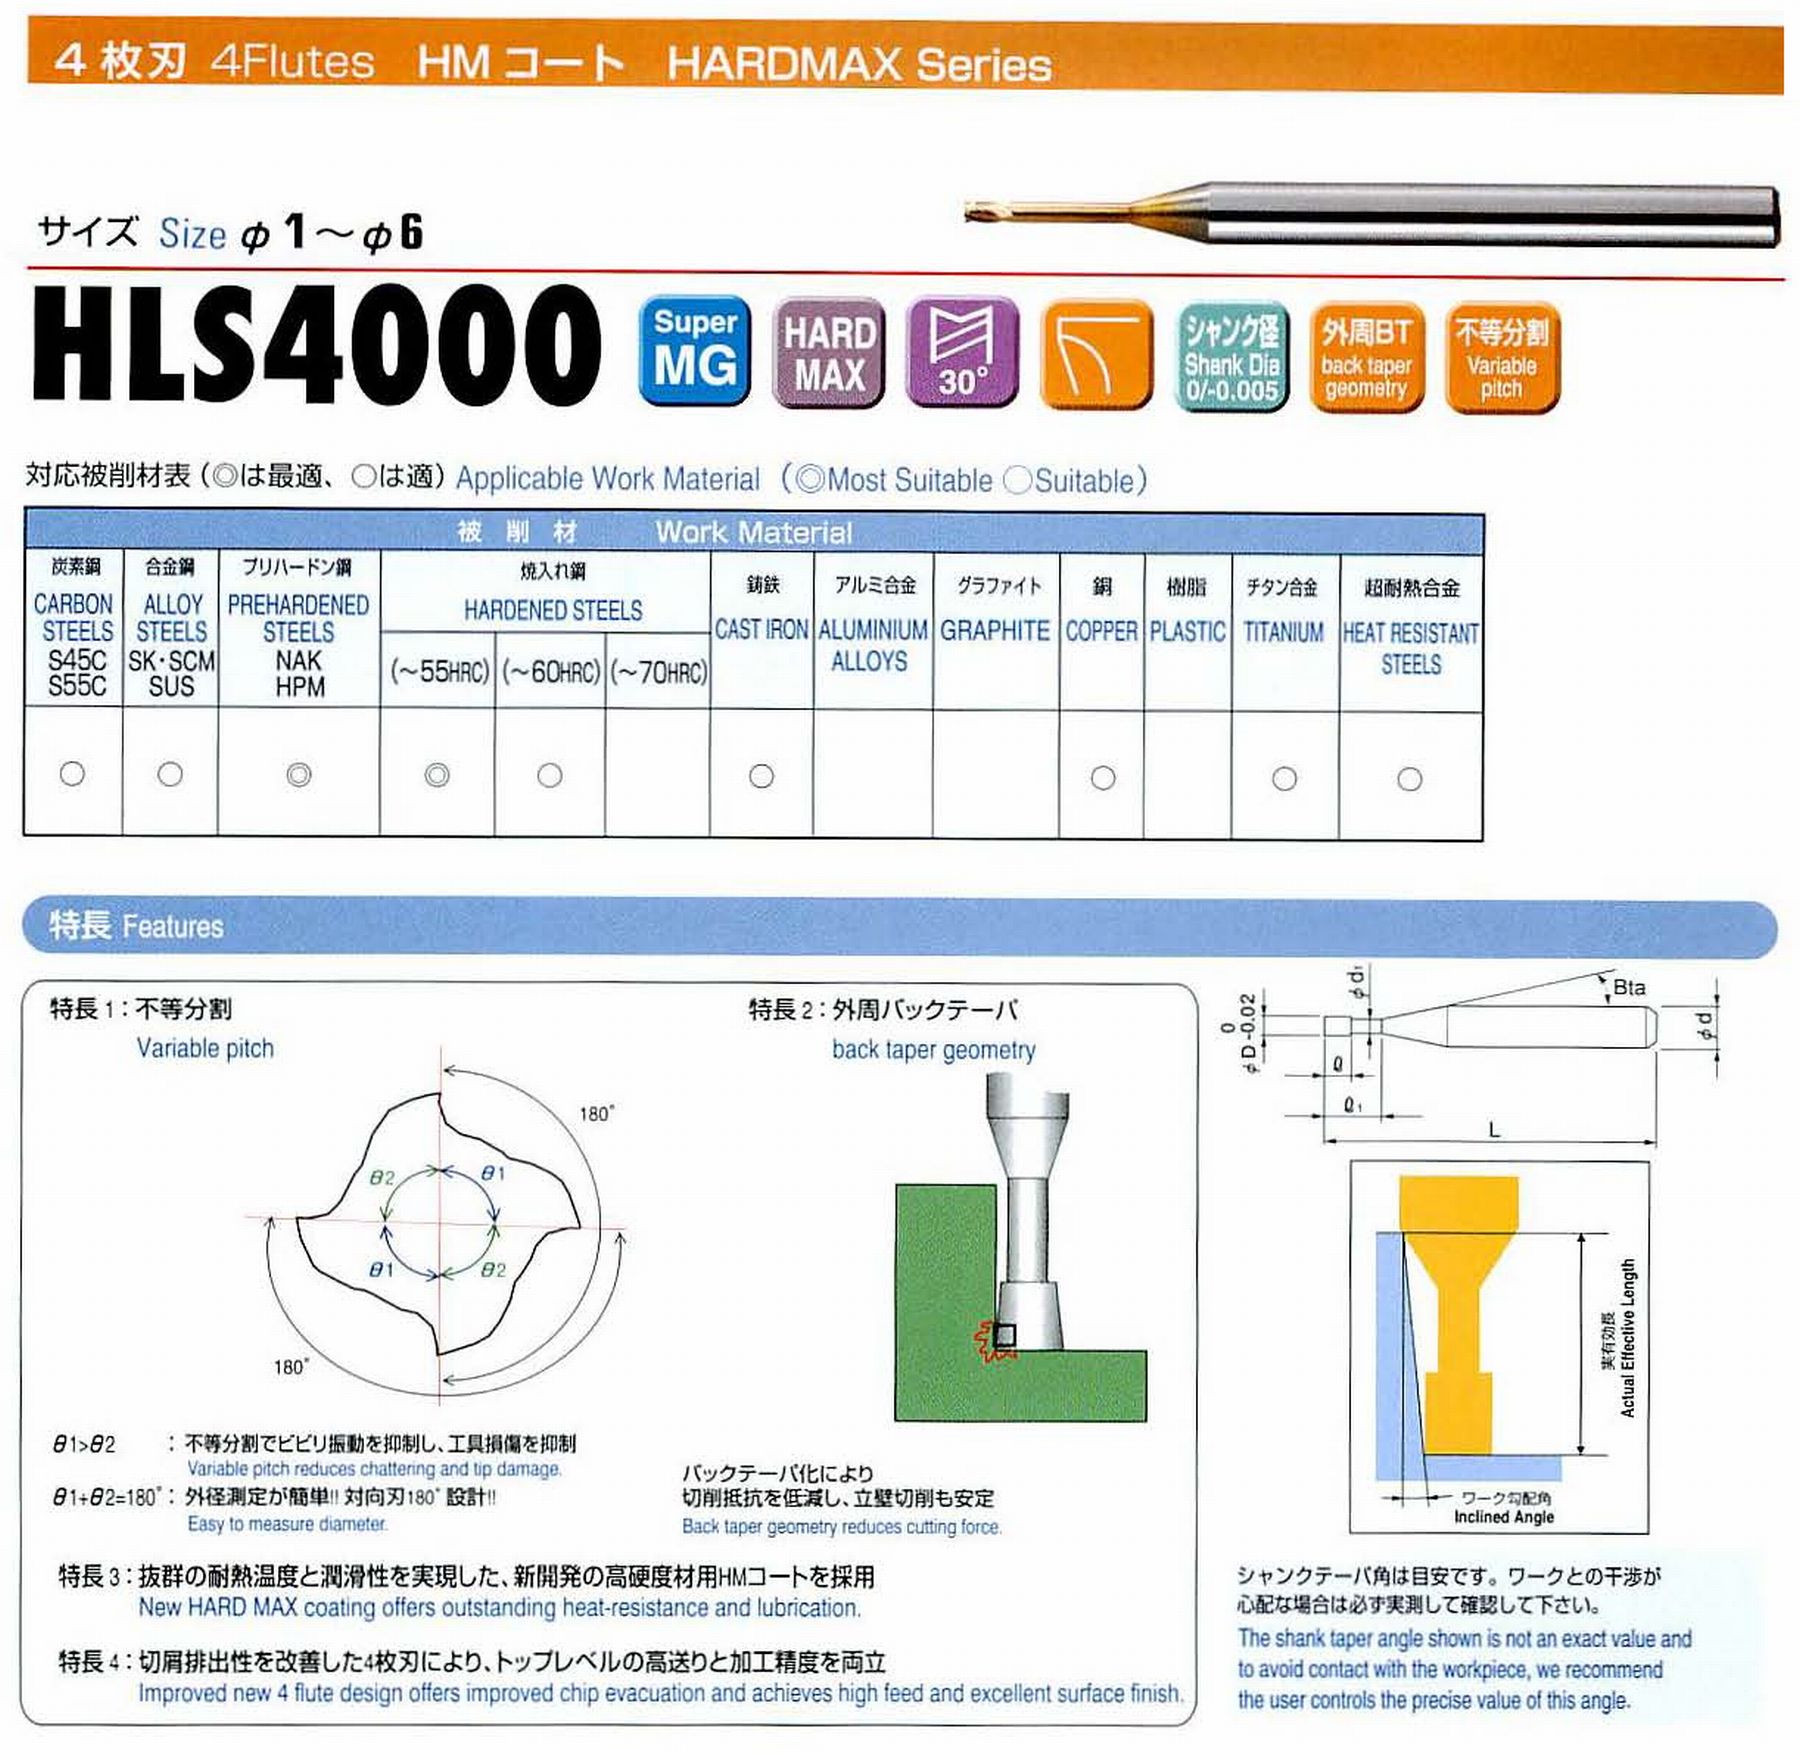 ユニオンツール 4枚刃 HLS4016-140 外径1.6 有効長14 刃長1.6 首径1.51 シャンクテーパ角16° 全長60 シャンク径4